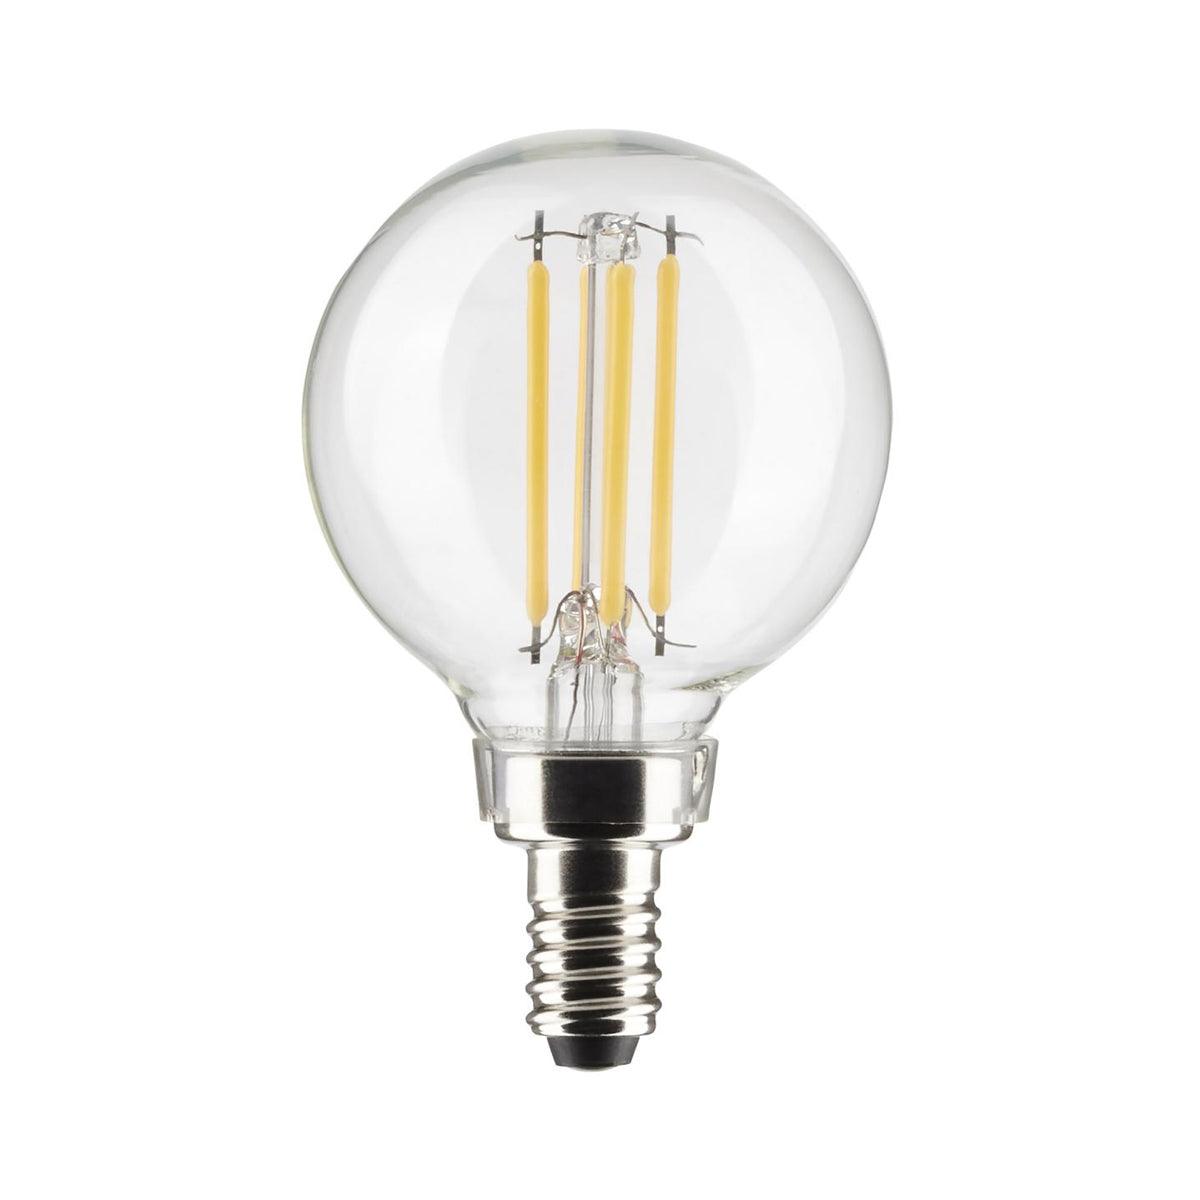 G16.5 Filament LED Globe Bulb, 4 Watt, 350 Lumens, 2700K, E12 Candelabra Base, Clear Finish, Pack Of 2 - Bees Lighting